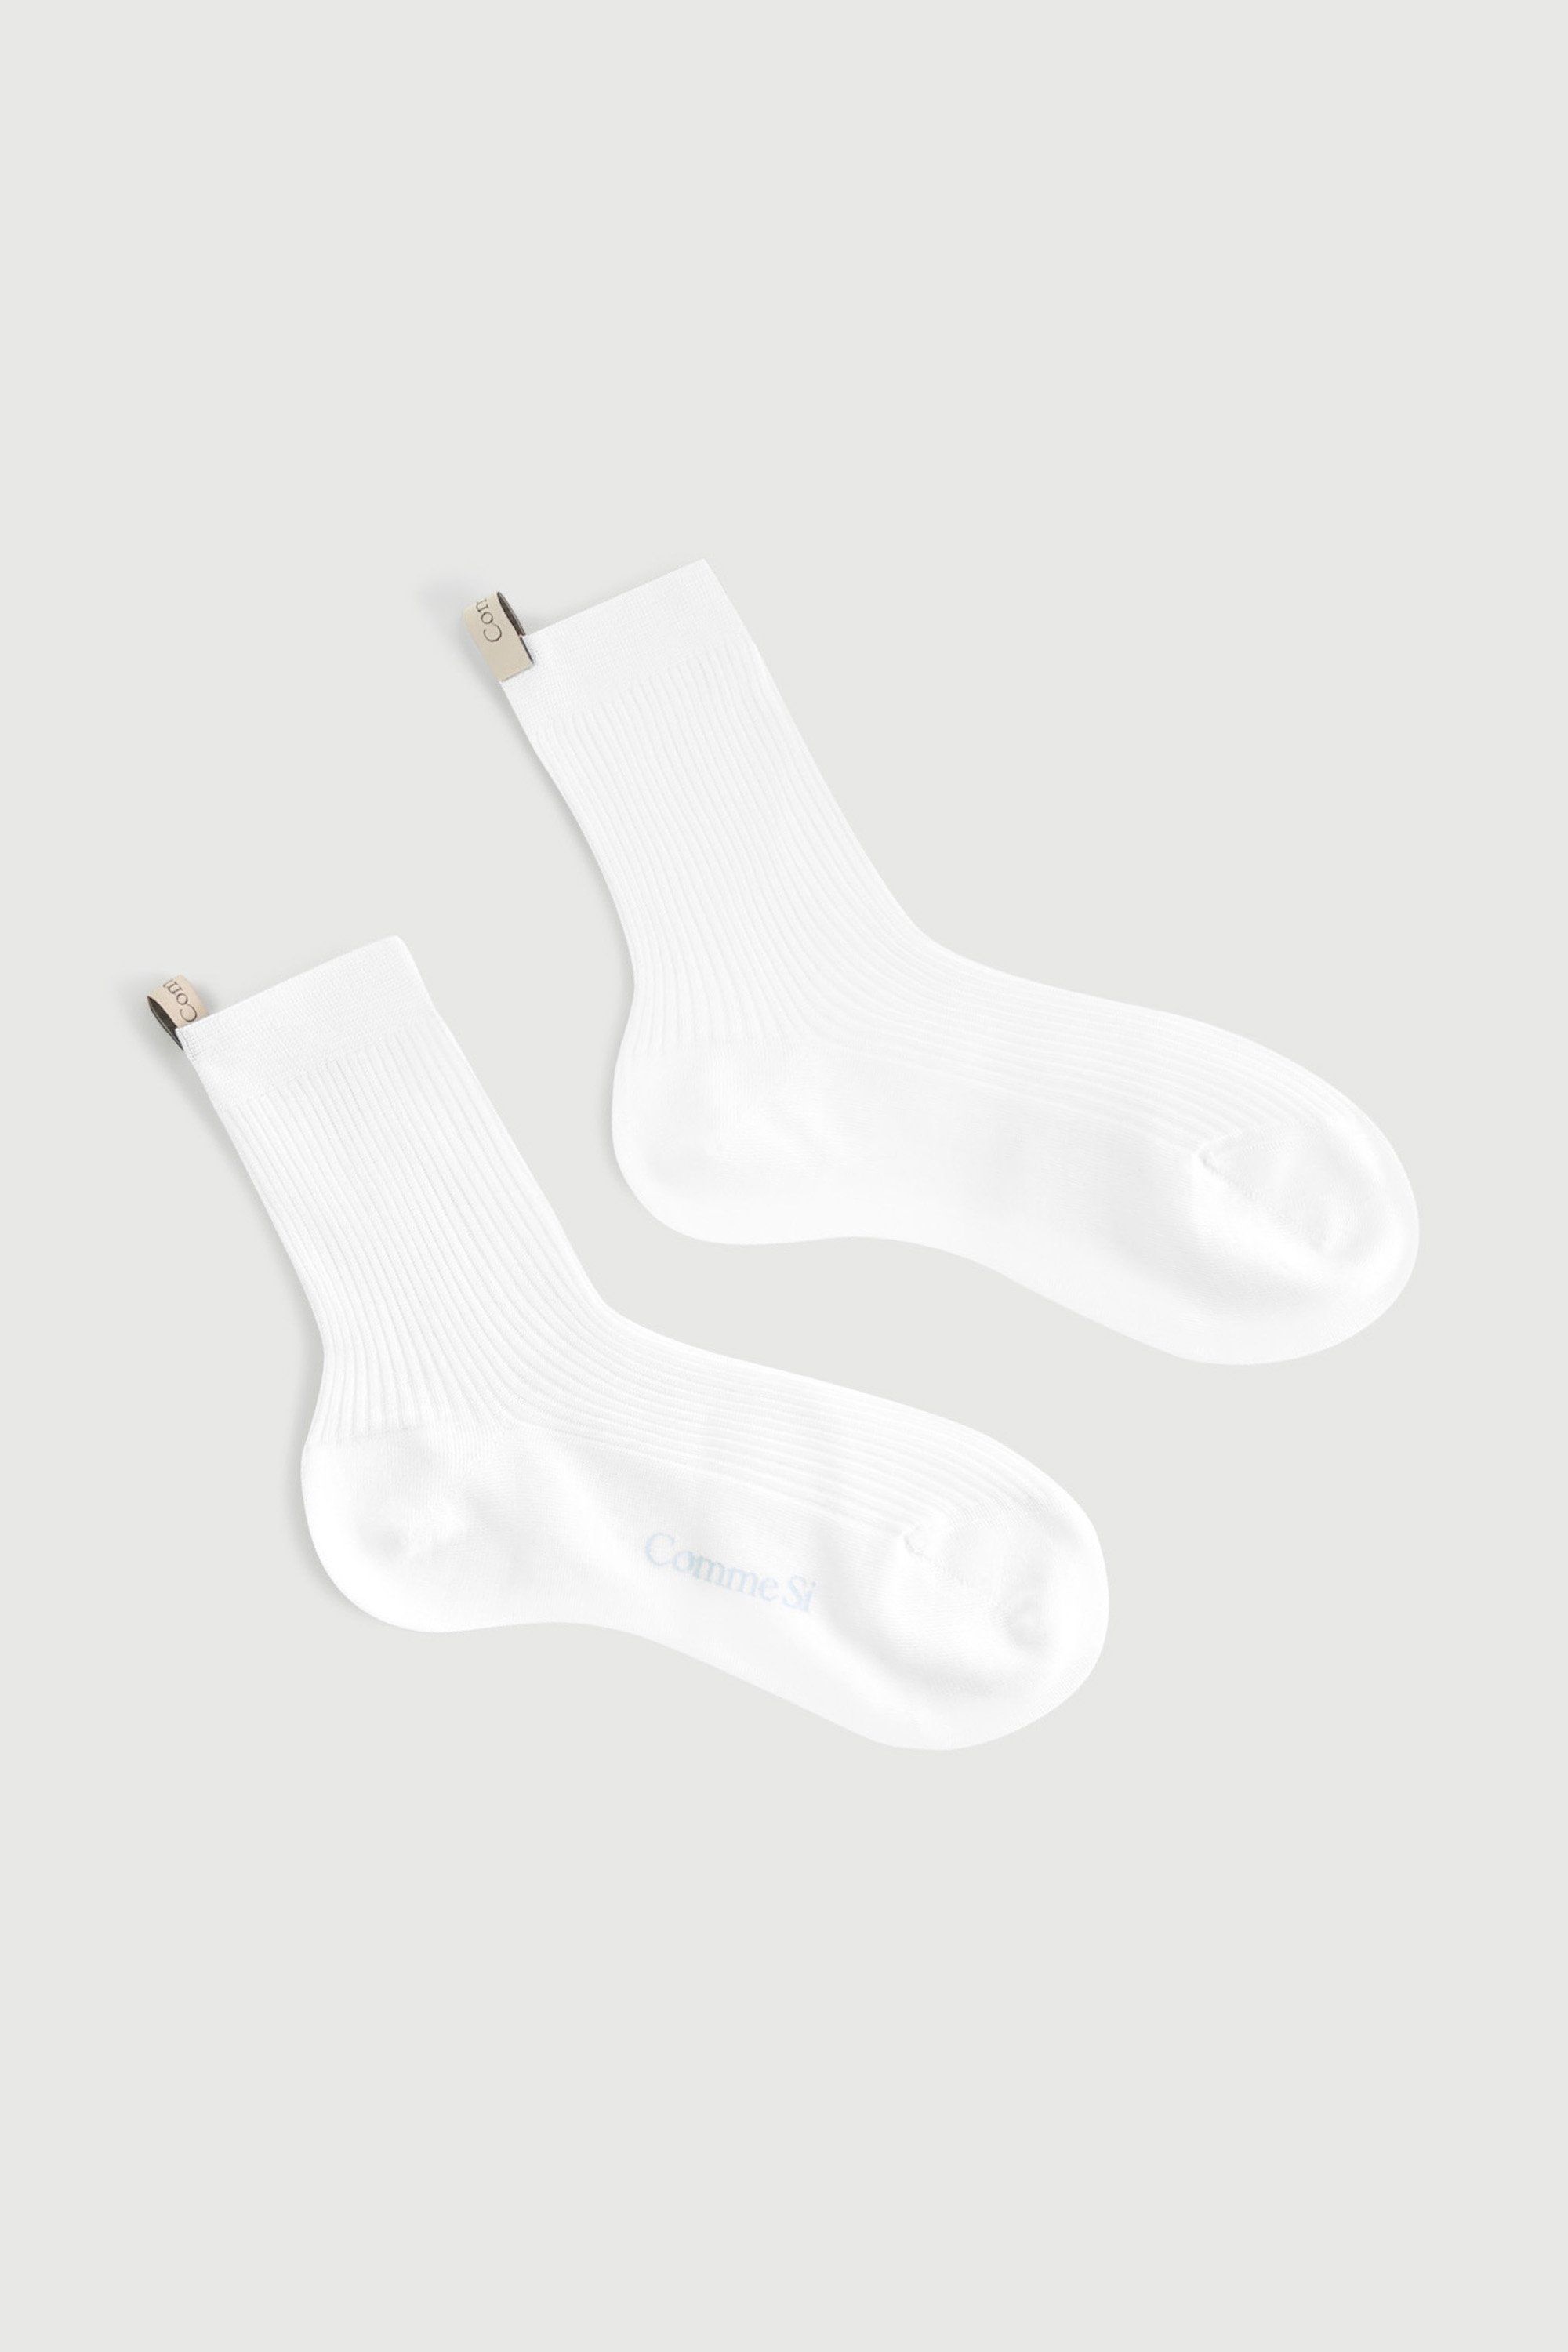 Handgelenk Blinddarm Stapel womens white socks Mehrere Farbe Narabar